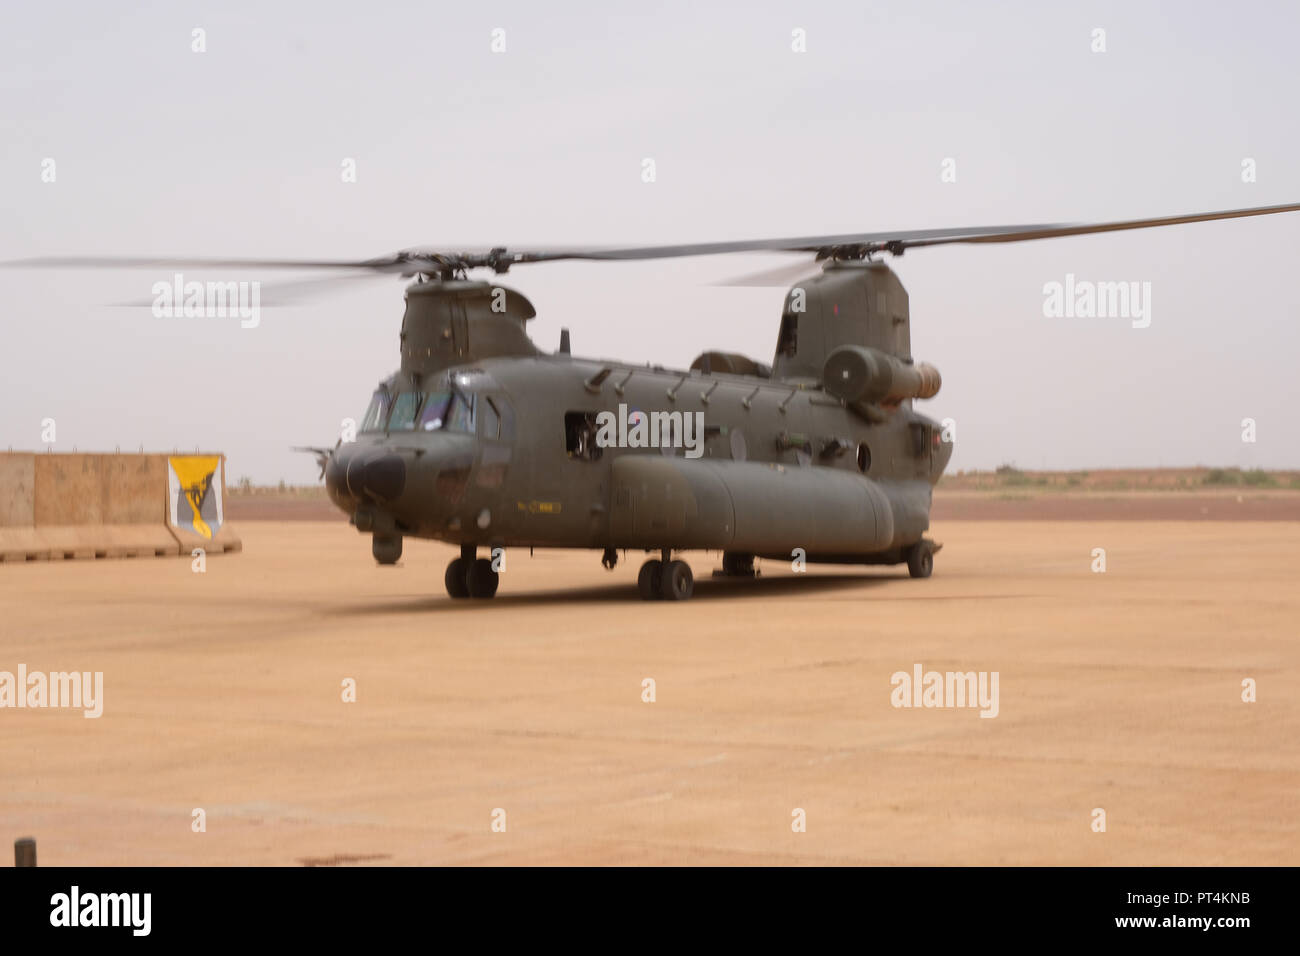 Royal Air Force trois hélicoptères de transport lourd Chinook sont  maintenant pleinement opérationnels et soutiennent des opérations de  contre-terrorisme français au Mali. Gao - Mali - août 2018. Trois  hélicoptères de transport